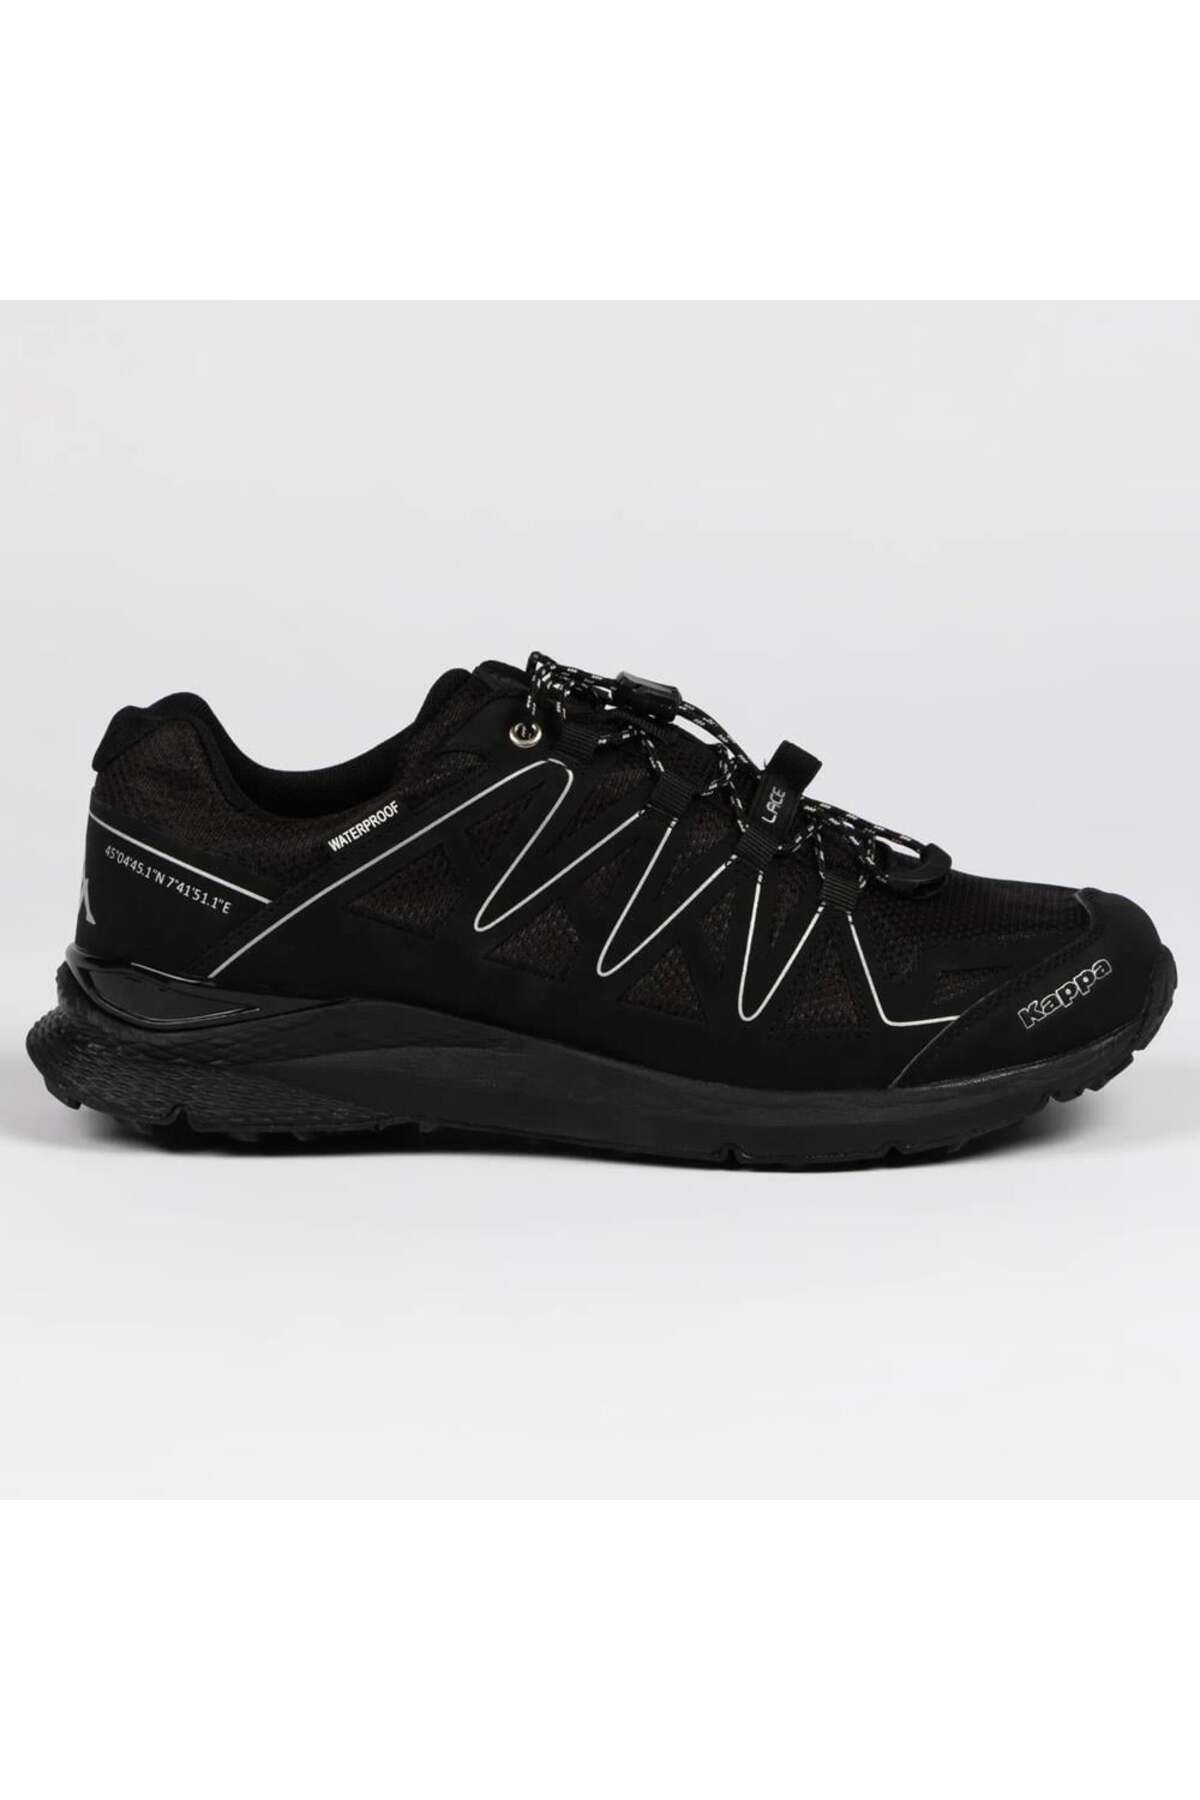 Kappa Kombat Terreno Wp Unisex Spor Ayakkabısı